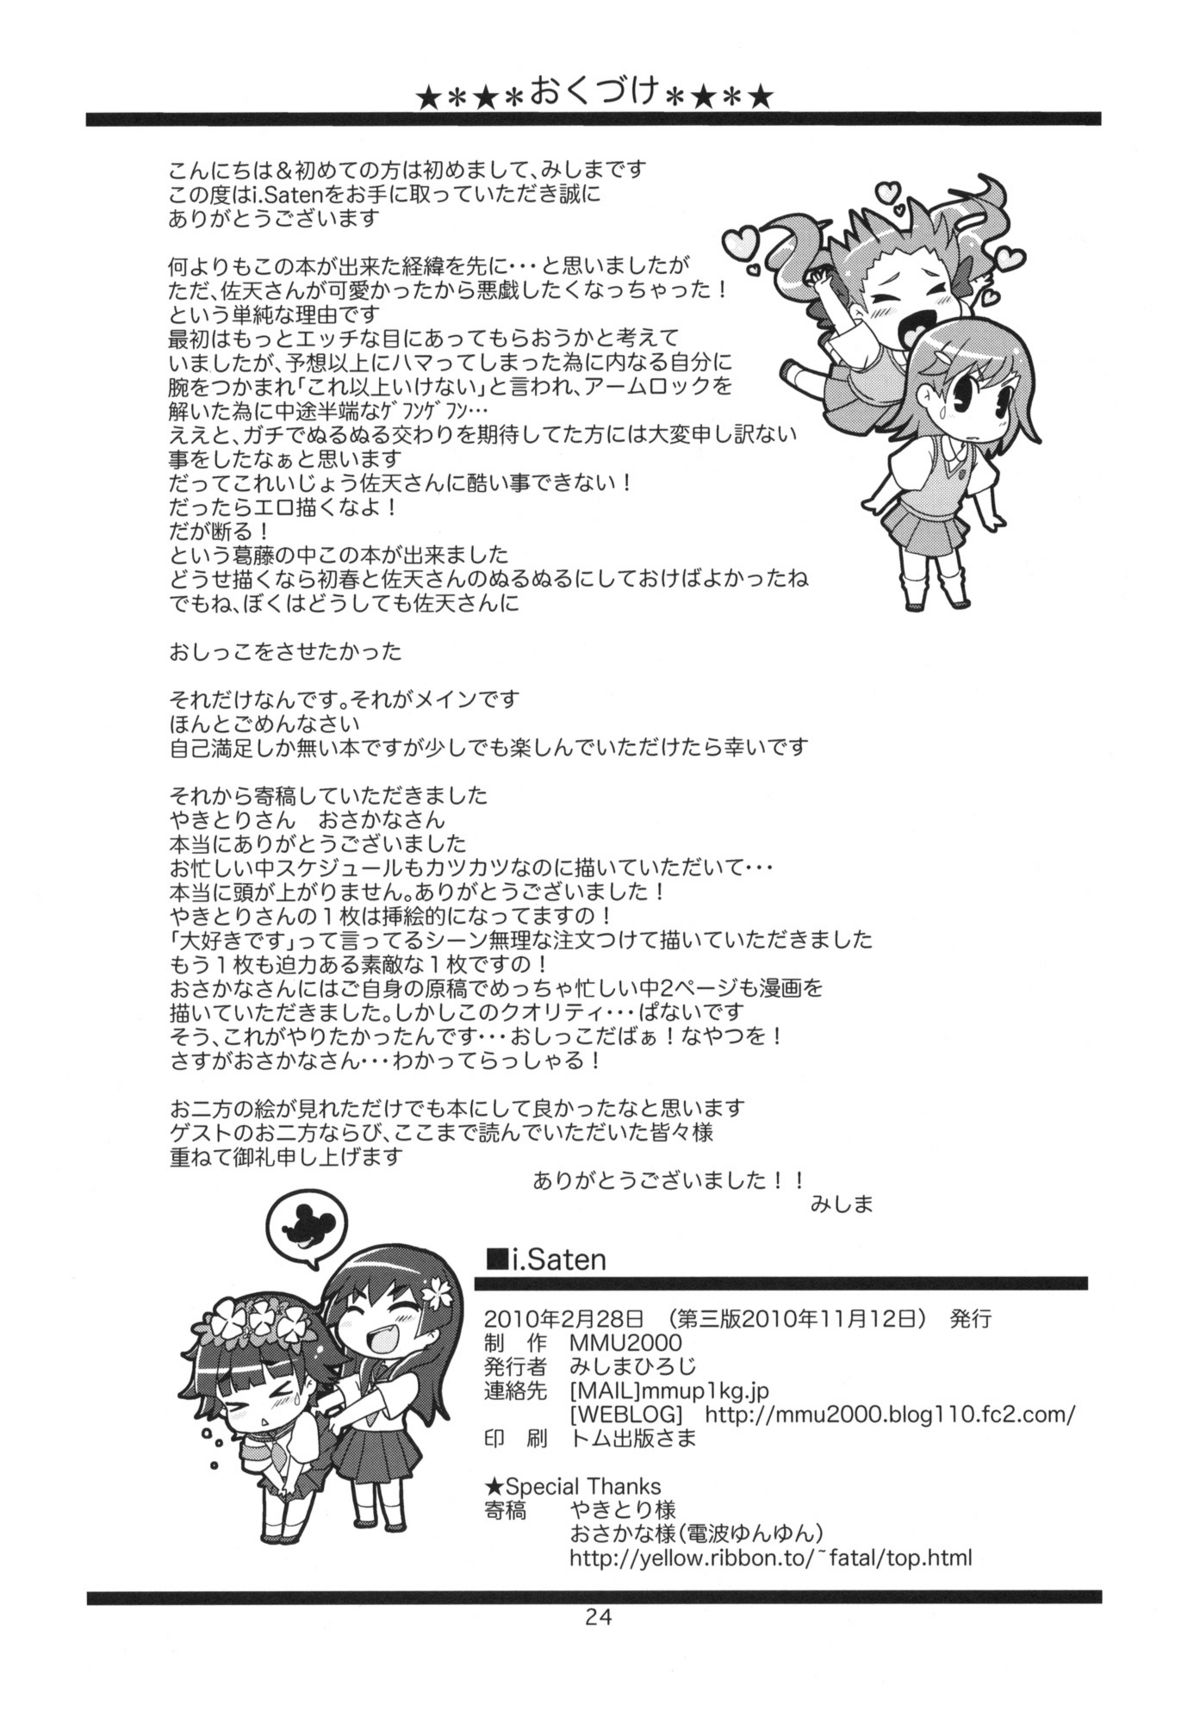 [MMU2000 (Mishima Hiroji)] i.Saten (Toaru Kagaku no Railgun) page 25 full